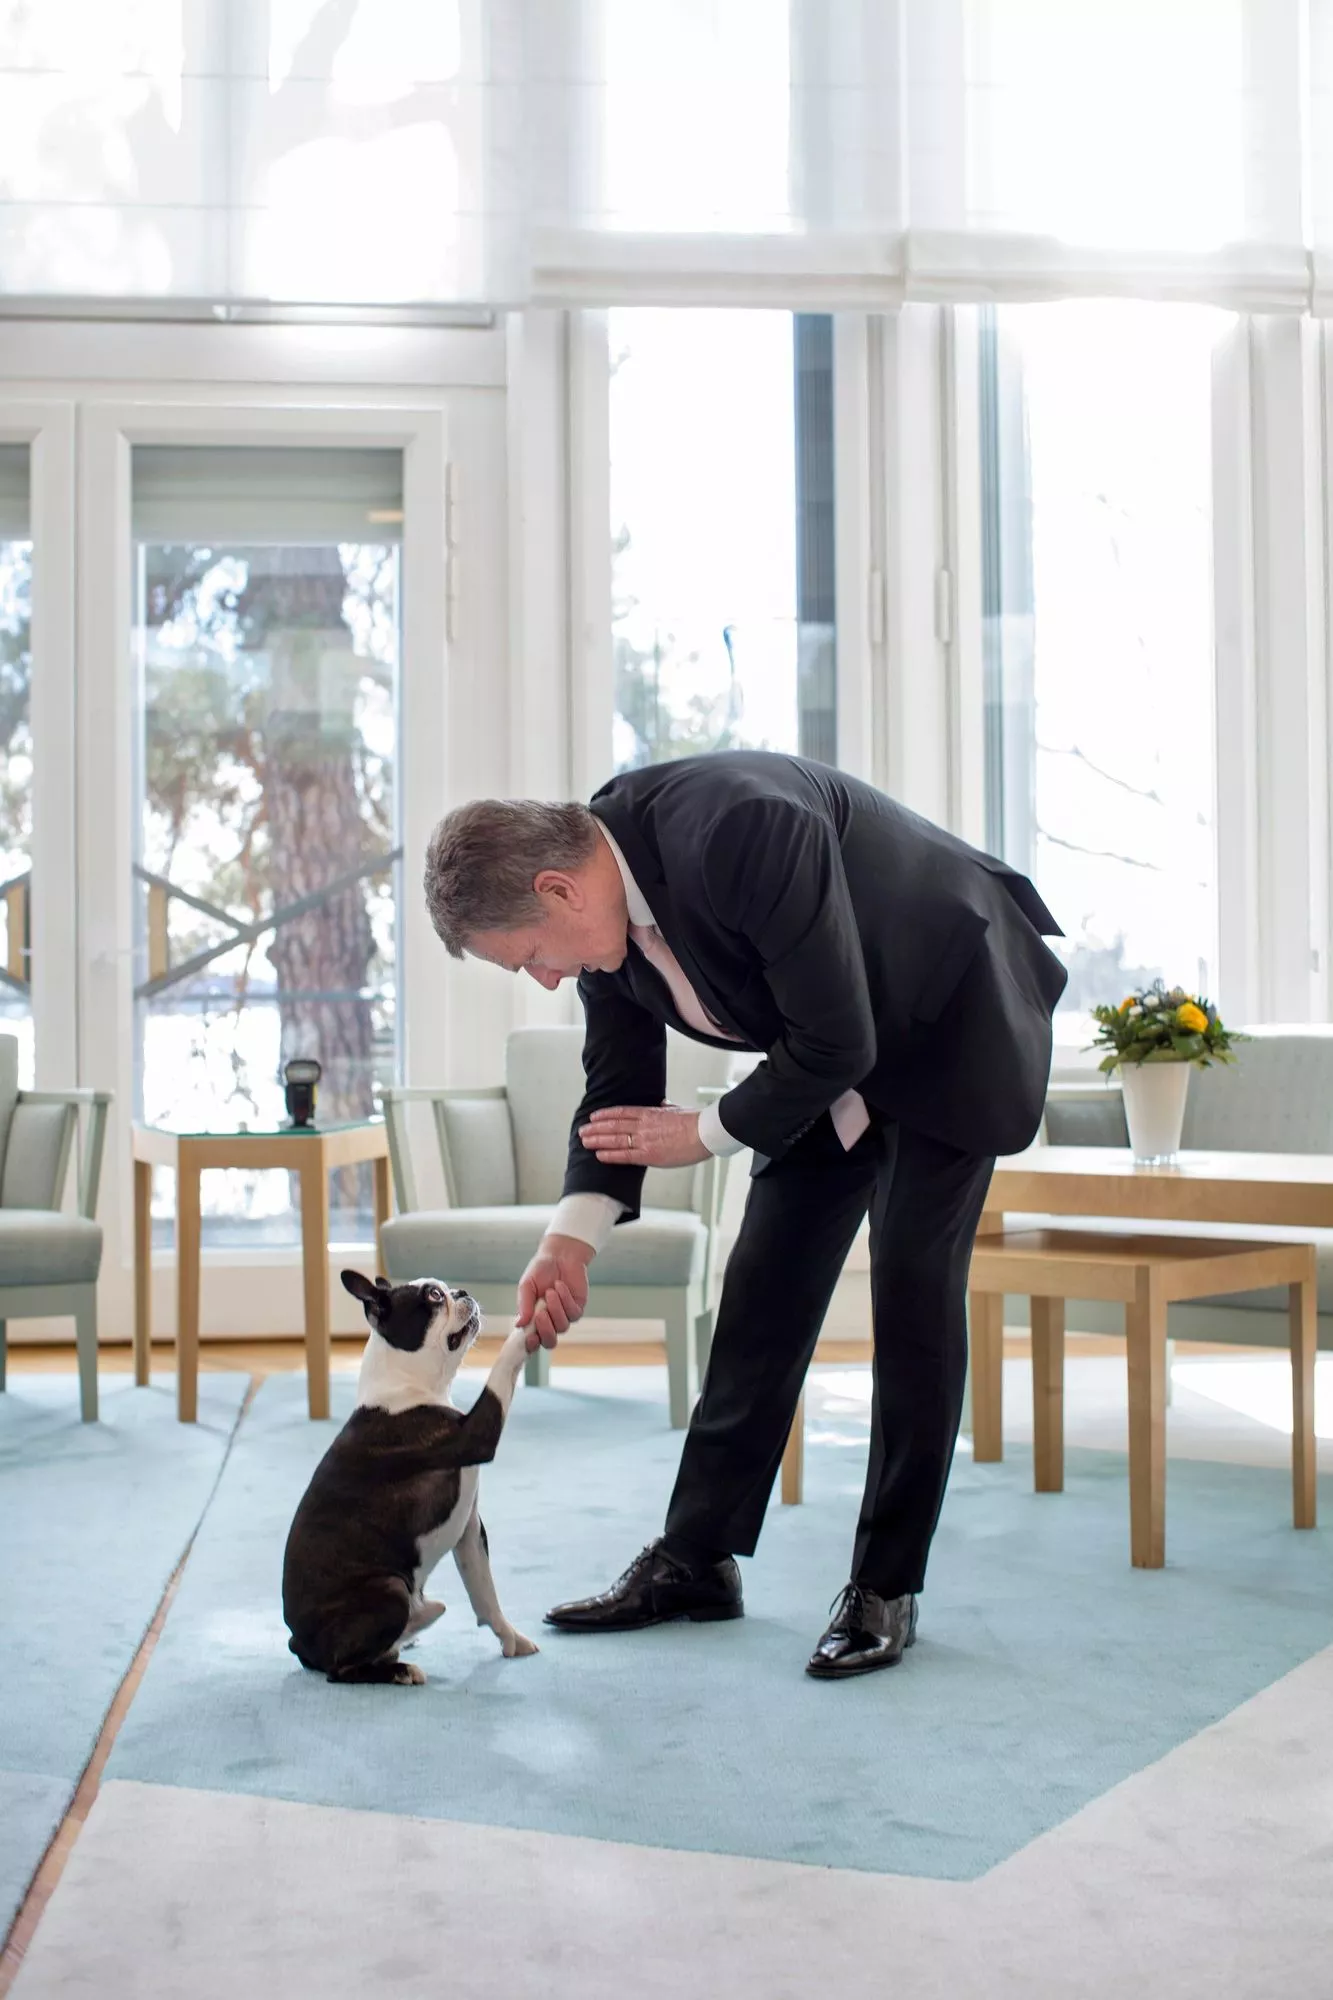 Lennu tunsi tavat ja protokollan. Tässä paiskataan kättä presidentin virka-asunnossa Mäntyniemessä. Nyt perheessä on uusi koira, tenderfieldinterrieri Osku.